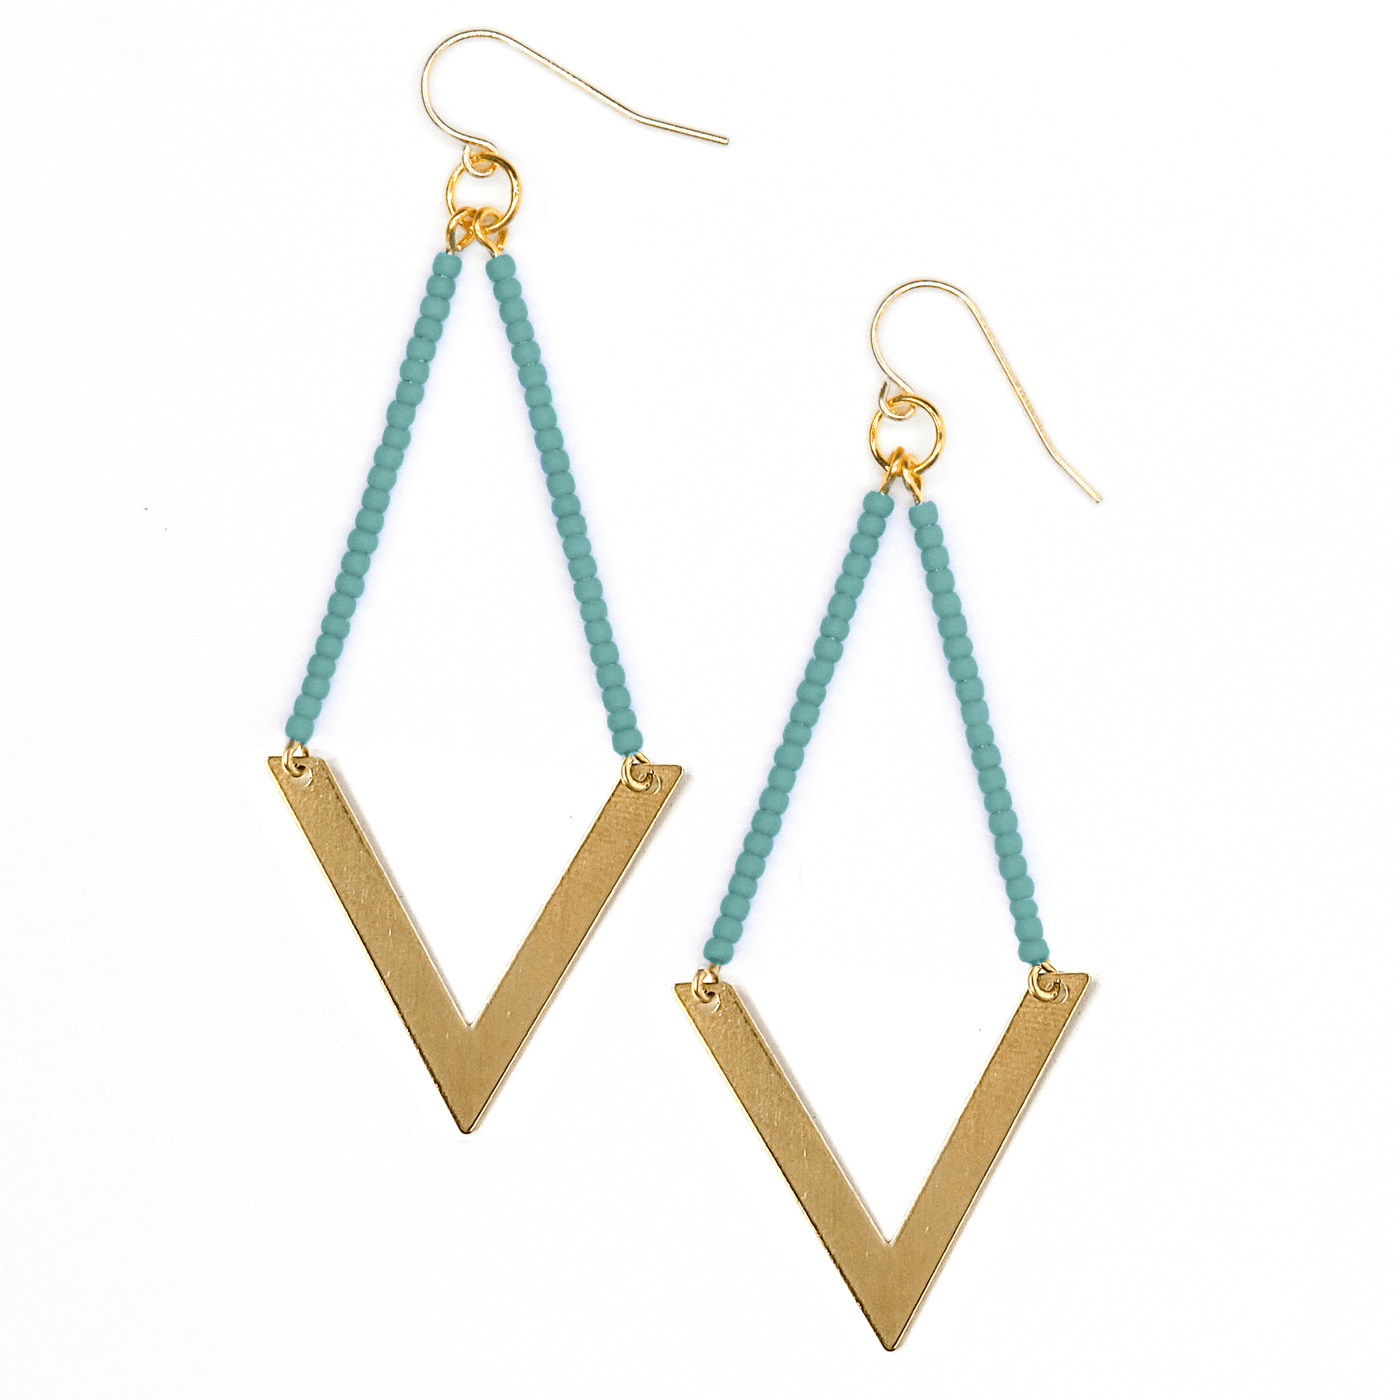 Topaz & Pearl Earrings Geometric Earrings, Turquoise Seafoam